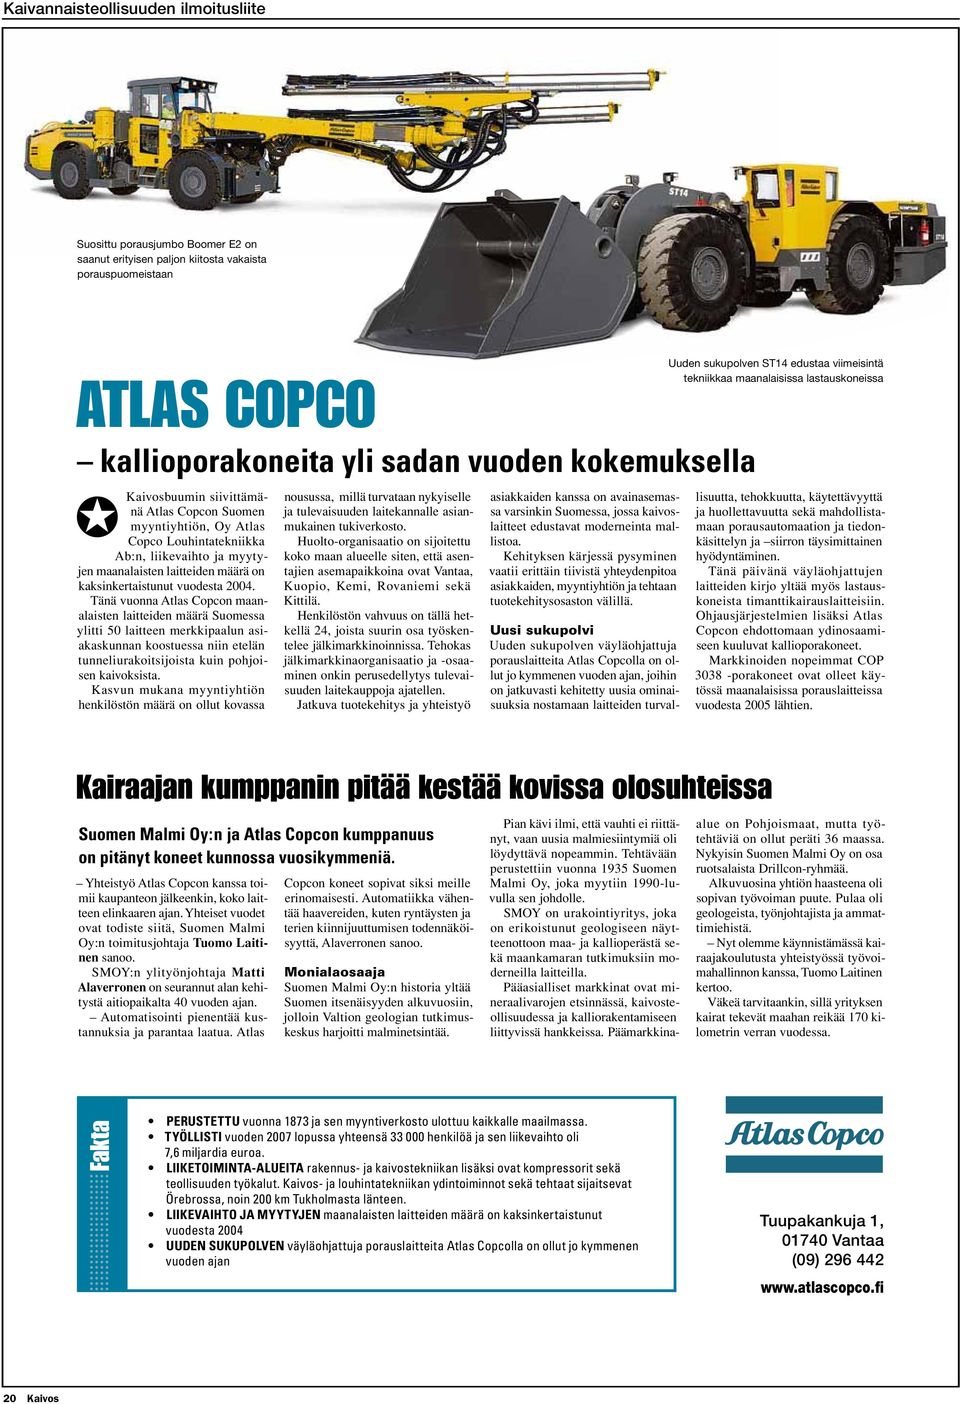 Tänä vuonna Atlas Copcon maanalaisten laitteiden määrä Suomessa ylitti 50 laitteen merkkipaalun asiakaskunnan koostuessa niin etelän tunneliurakoitsijoista kuin pohjoisen kaivoksista.